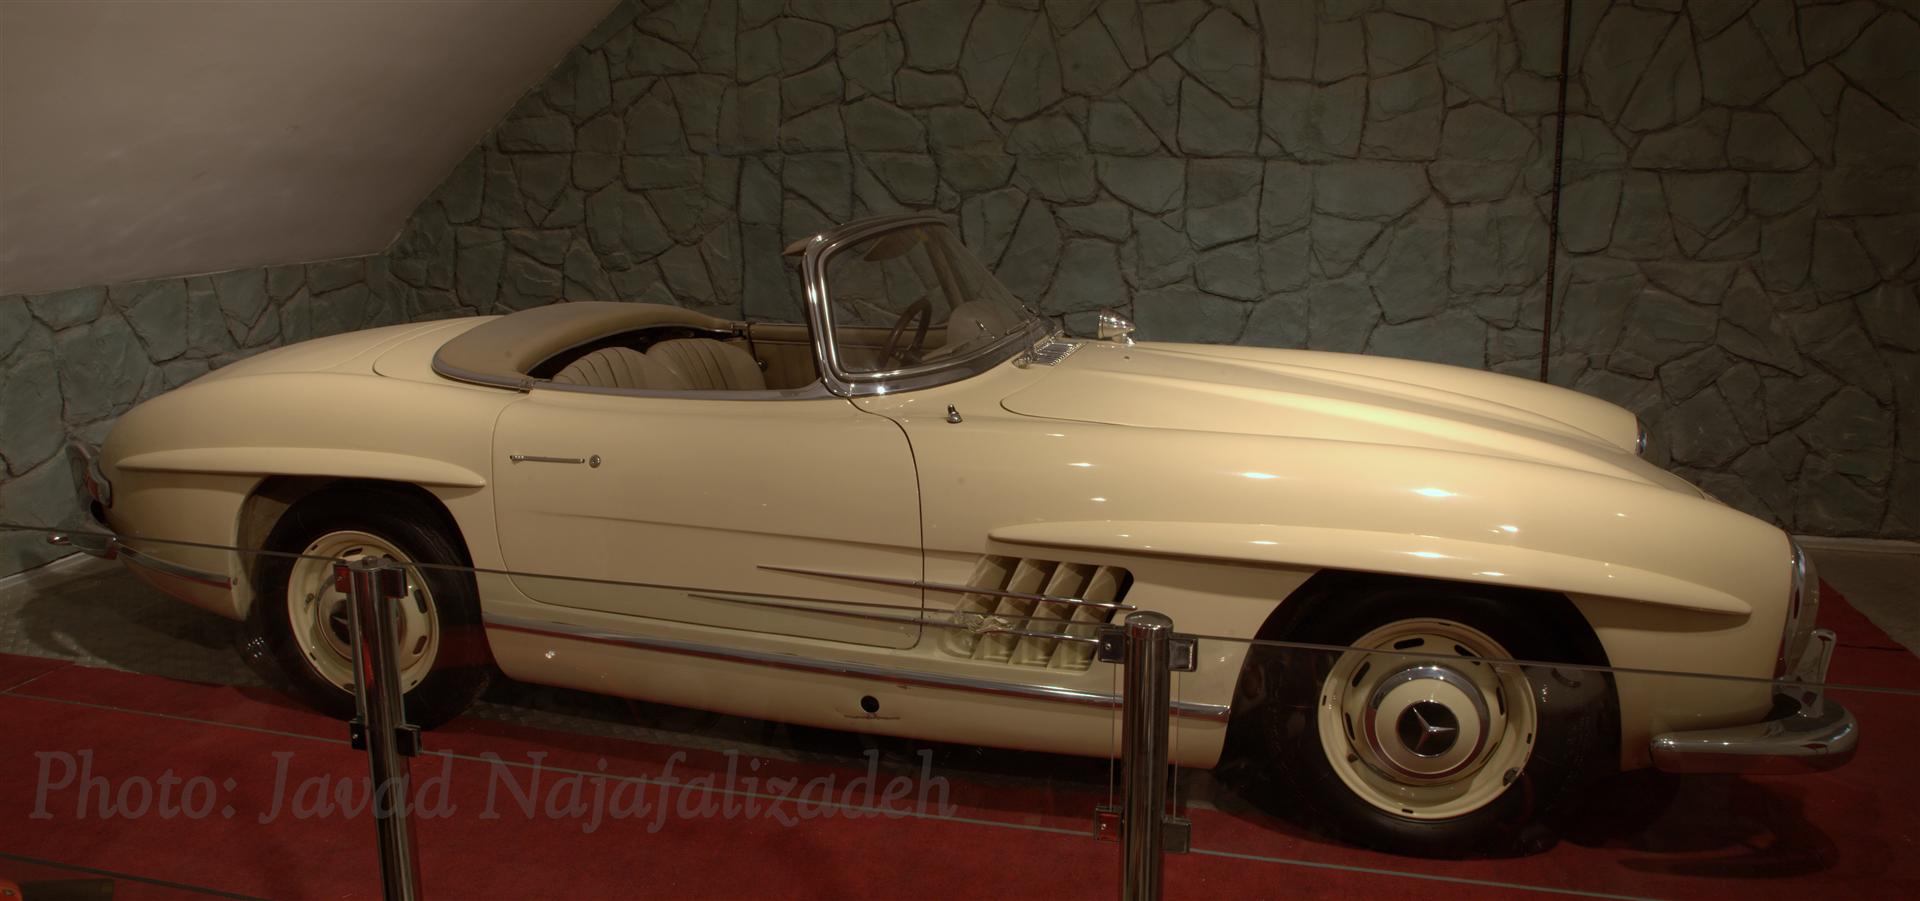 استقبال قابل توجه بازدید کنندگان از موزه اتومبیلهای سلطنتی، طی شش سال   